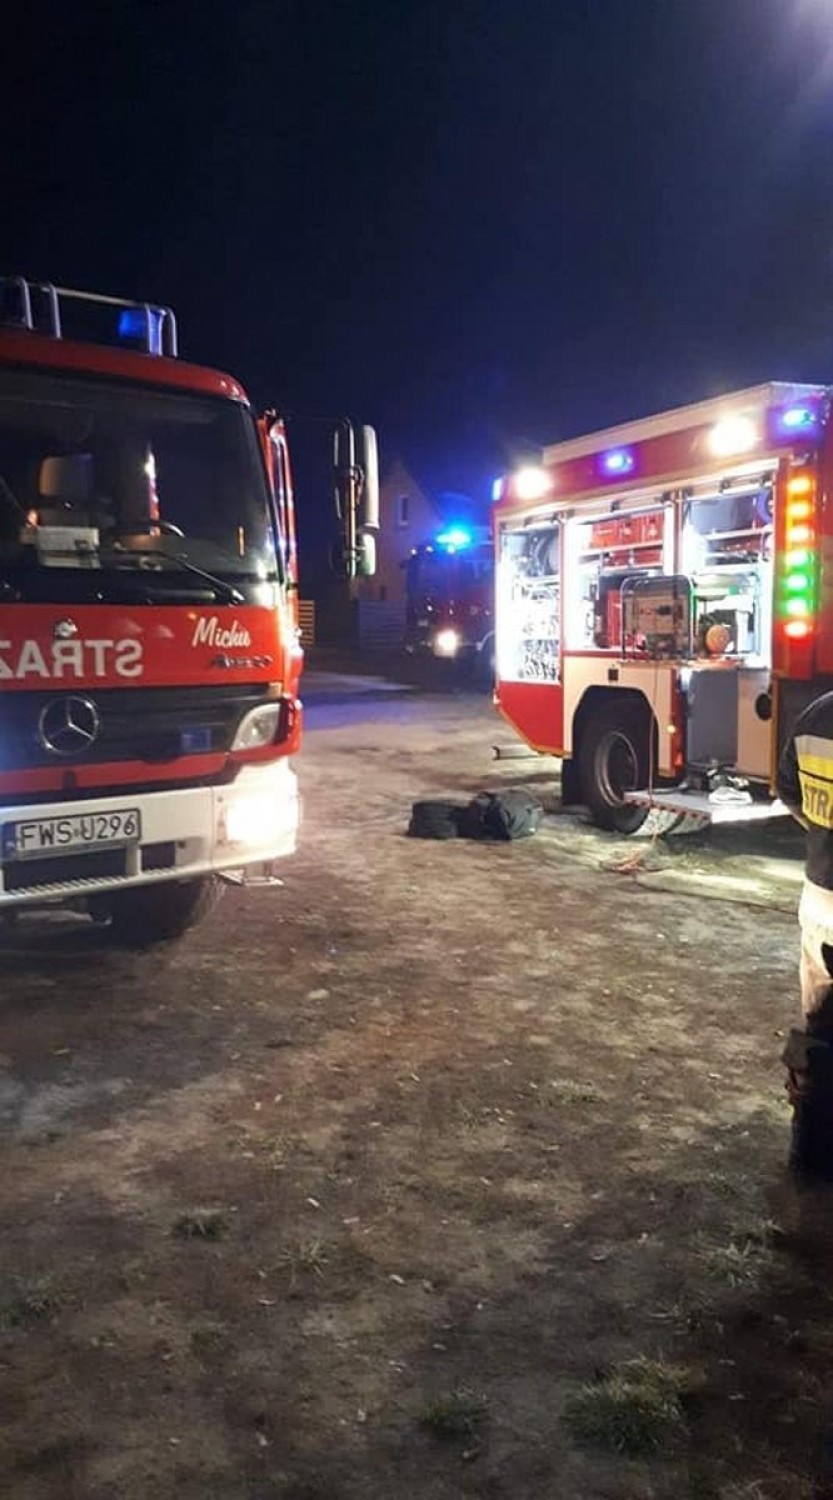 POWIAT WSCHOWSKI. 11 grudnia 2019 w  budynku mieszkalnym w Lubogoszczy doszło do pożaru [ZDJĘCIA]